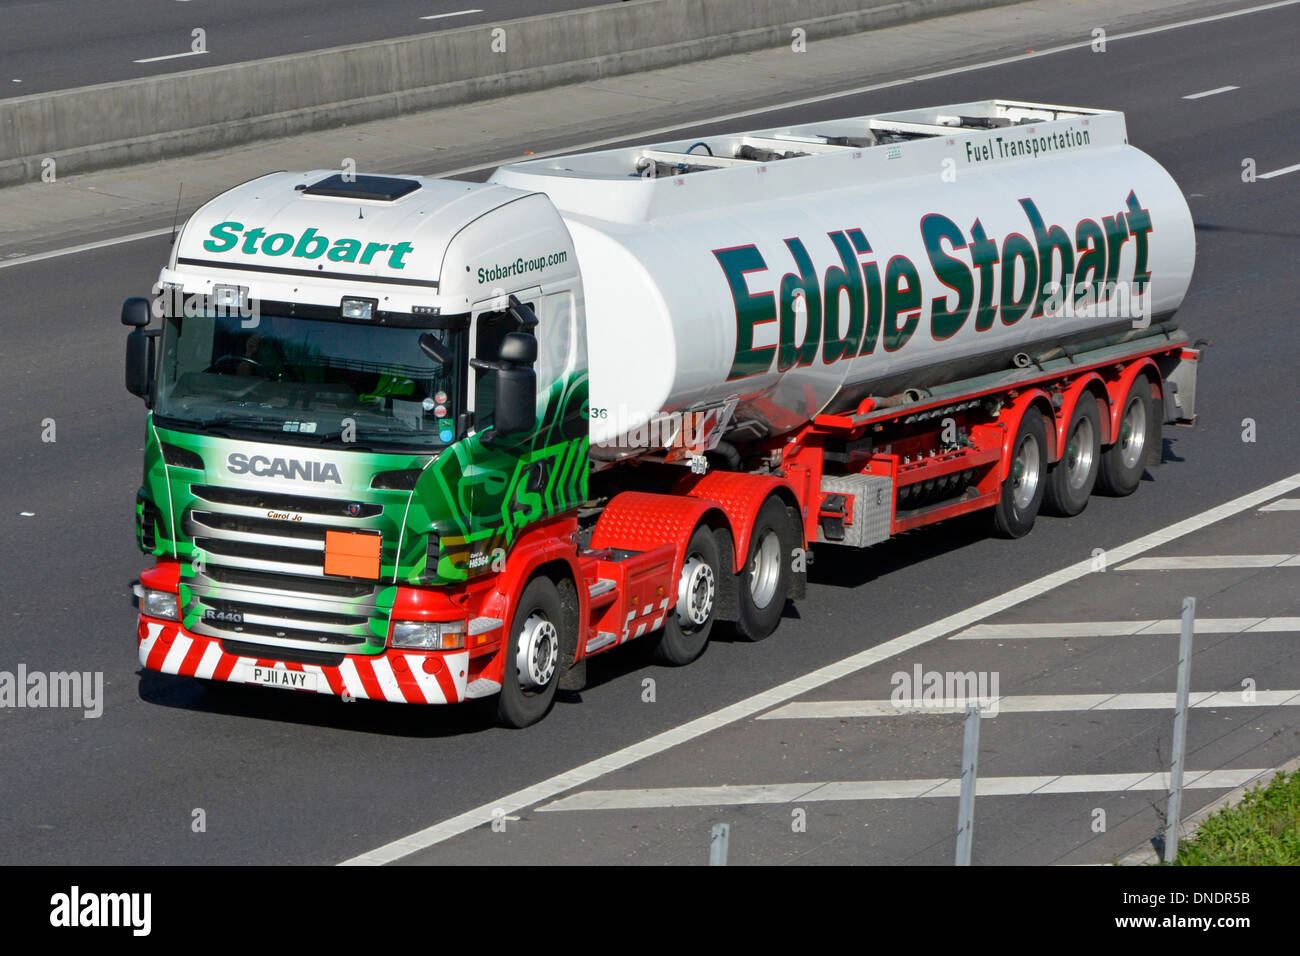 Camion-citerne à carburant articulé et hgv Prim Mover camion Scania exploité par le transporteur Eddie Stobart sur la route d'autoroute orbitale M25 de Londres au Royaume-Uni Banque D'Images